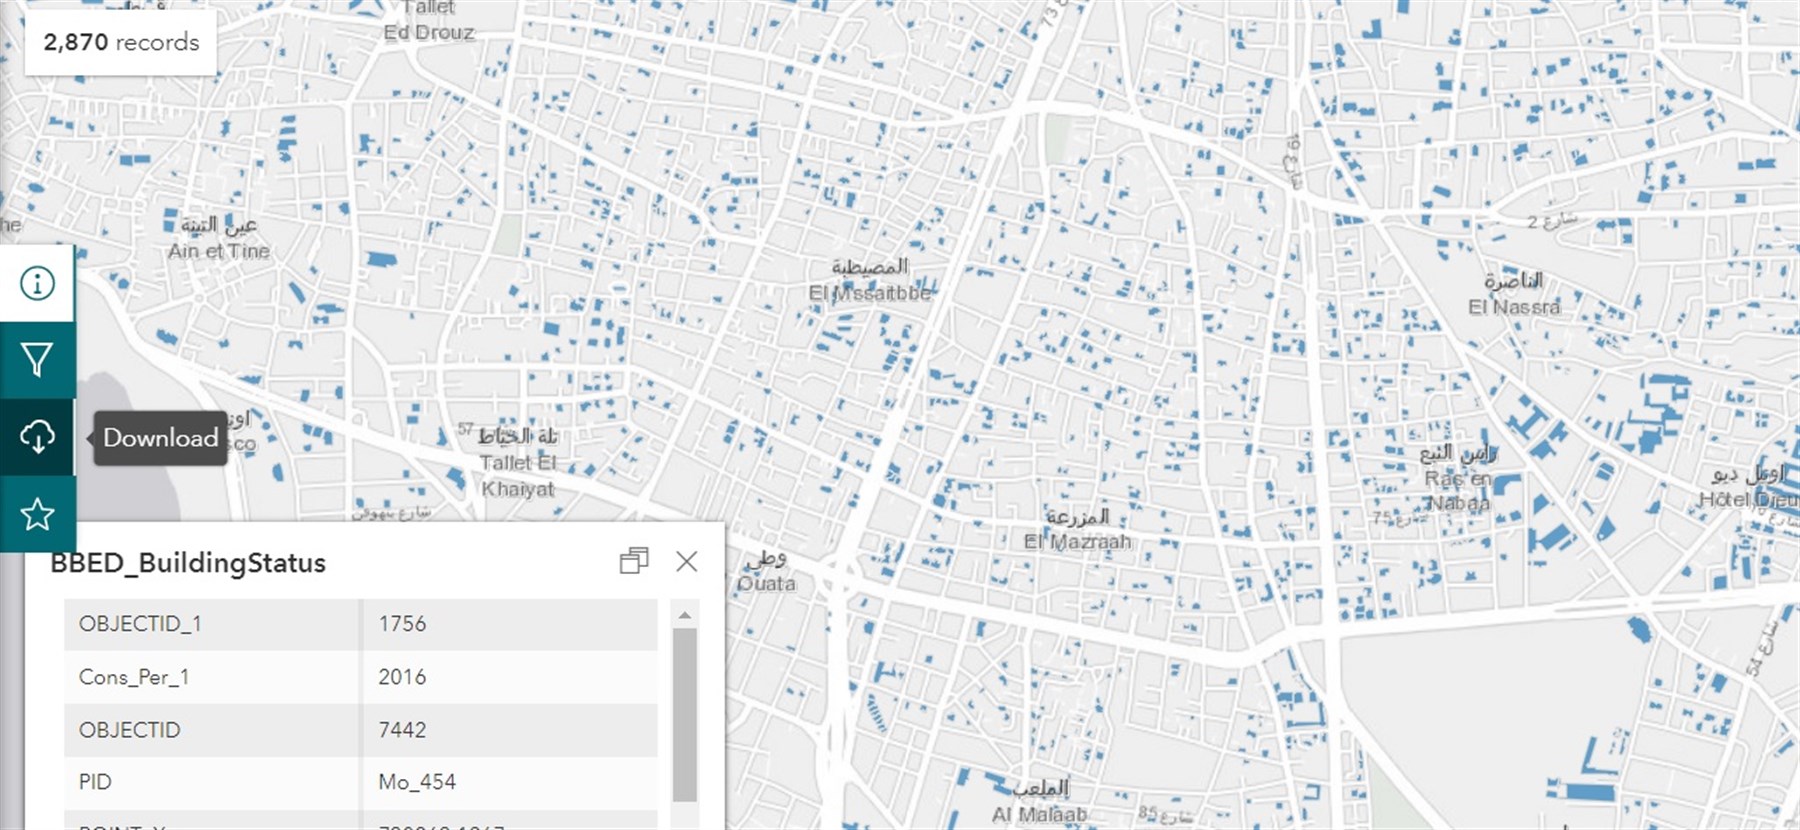 طبقات جديدة من قاعدة بيانات البيئة العمرانية في بيروت متاحة للتحميل الآن